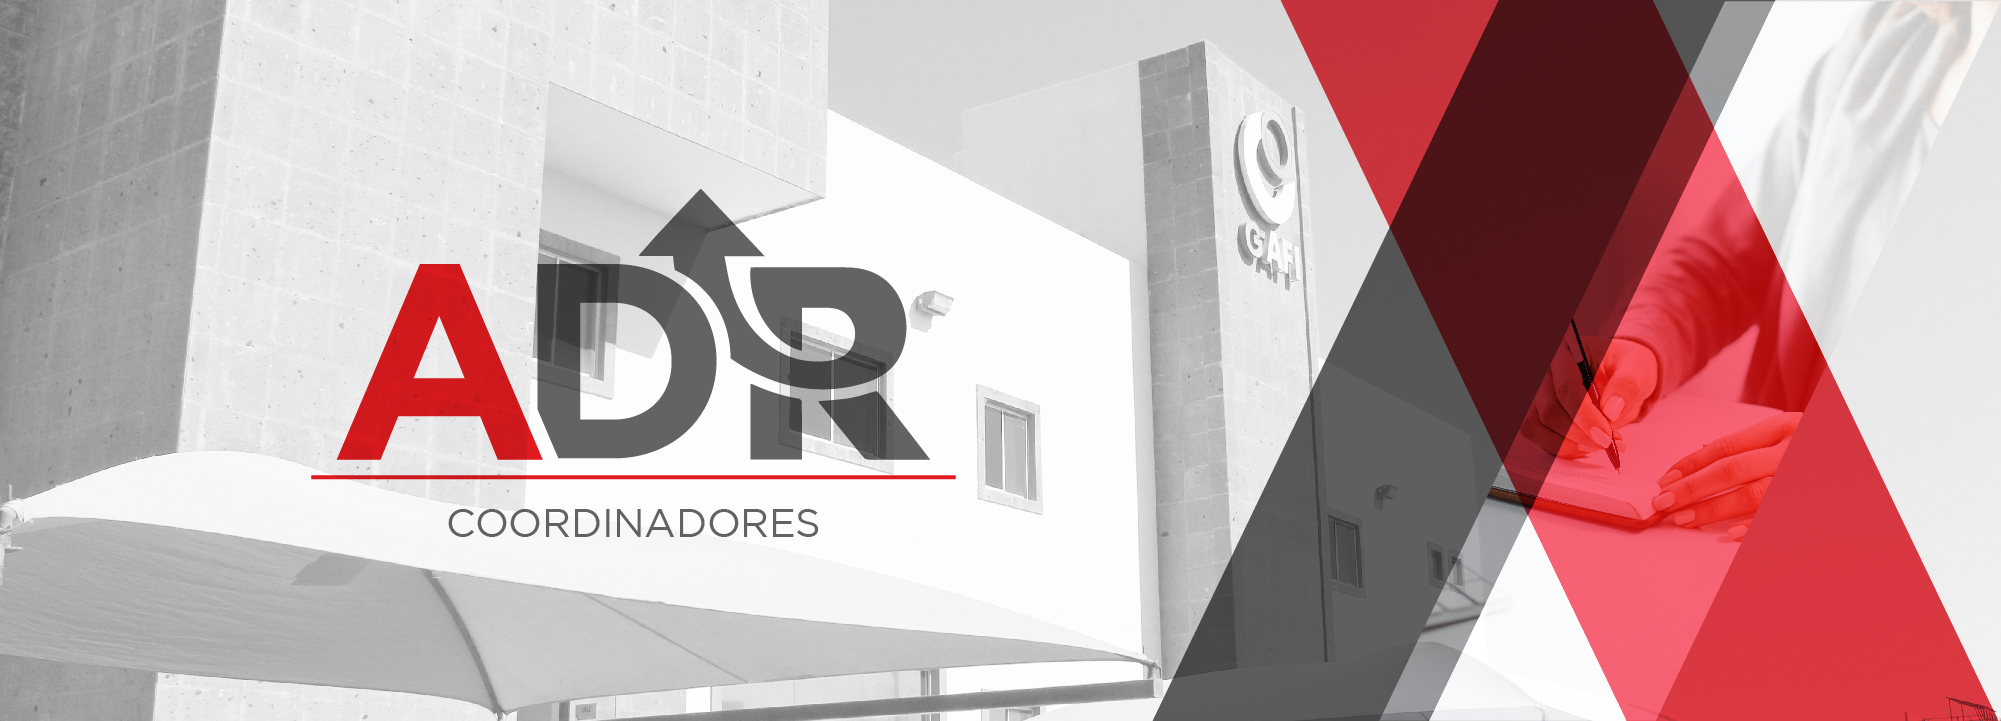 ADR | Coordinadores GAFI-CAP014